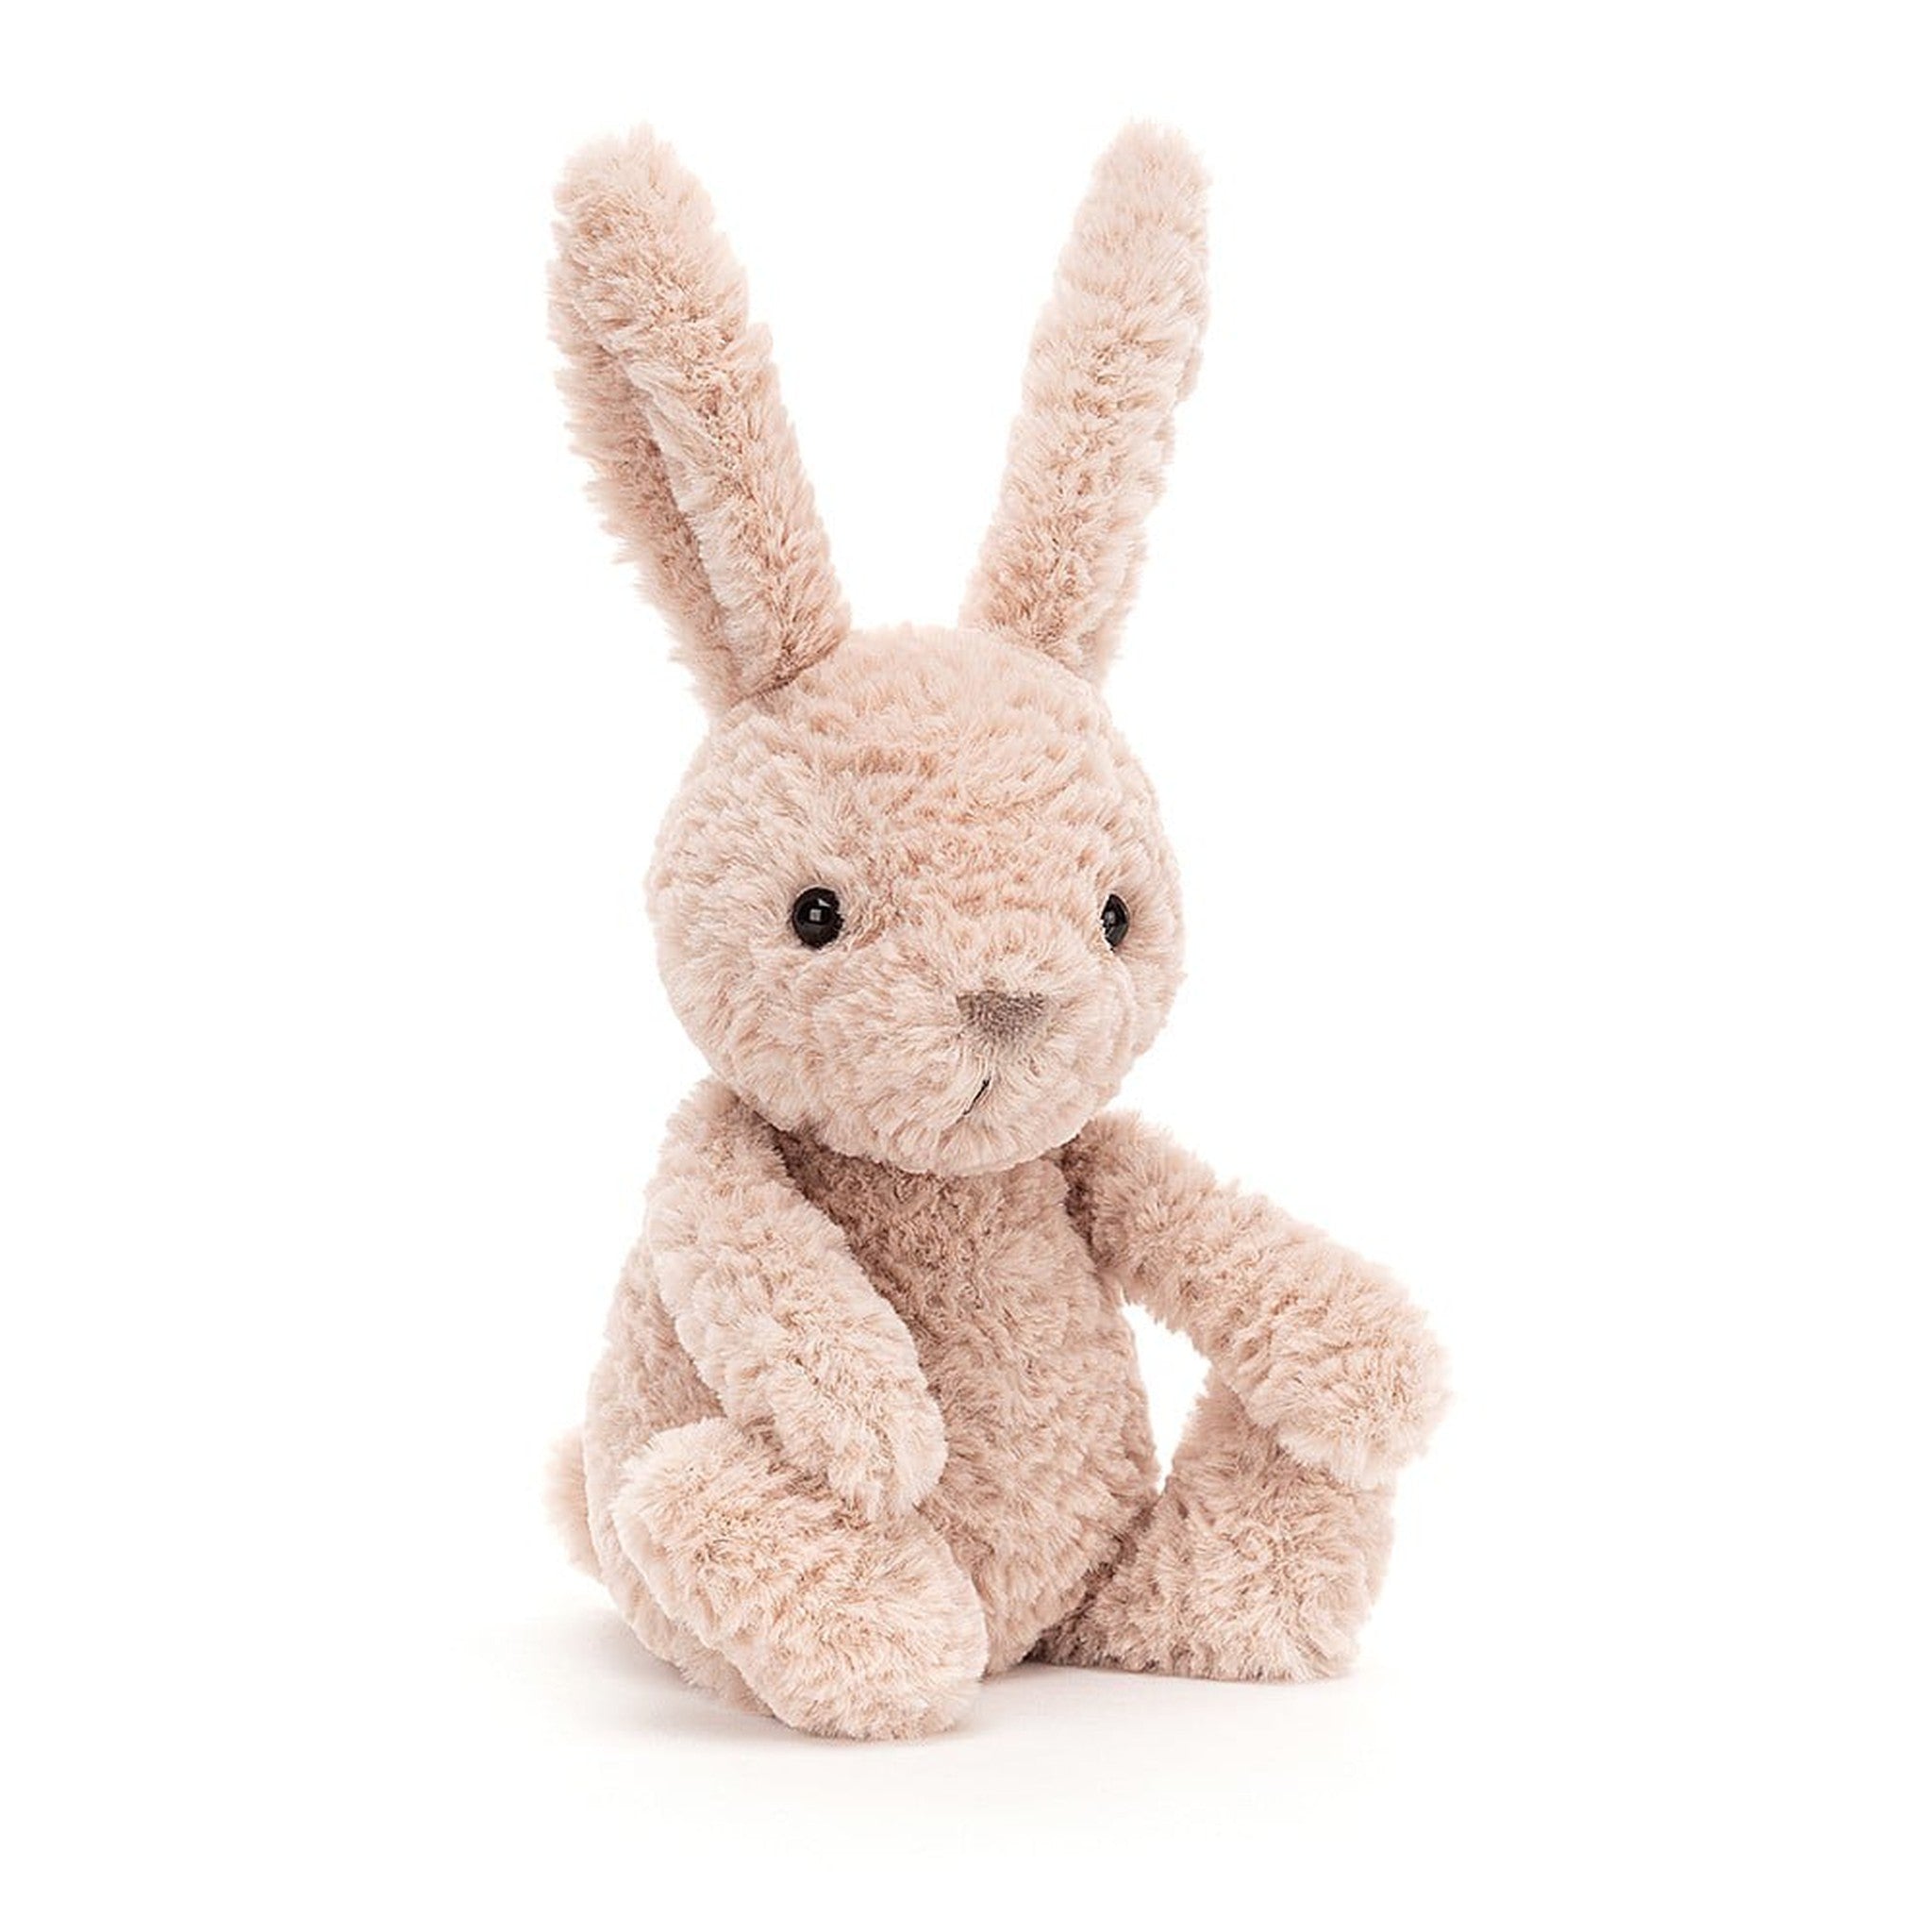 Tumbletuft Bunny - small